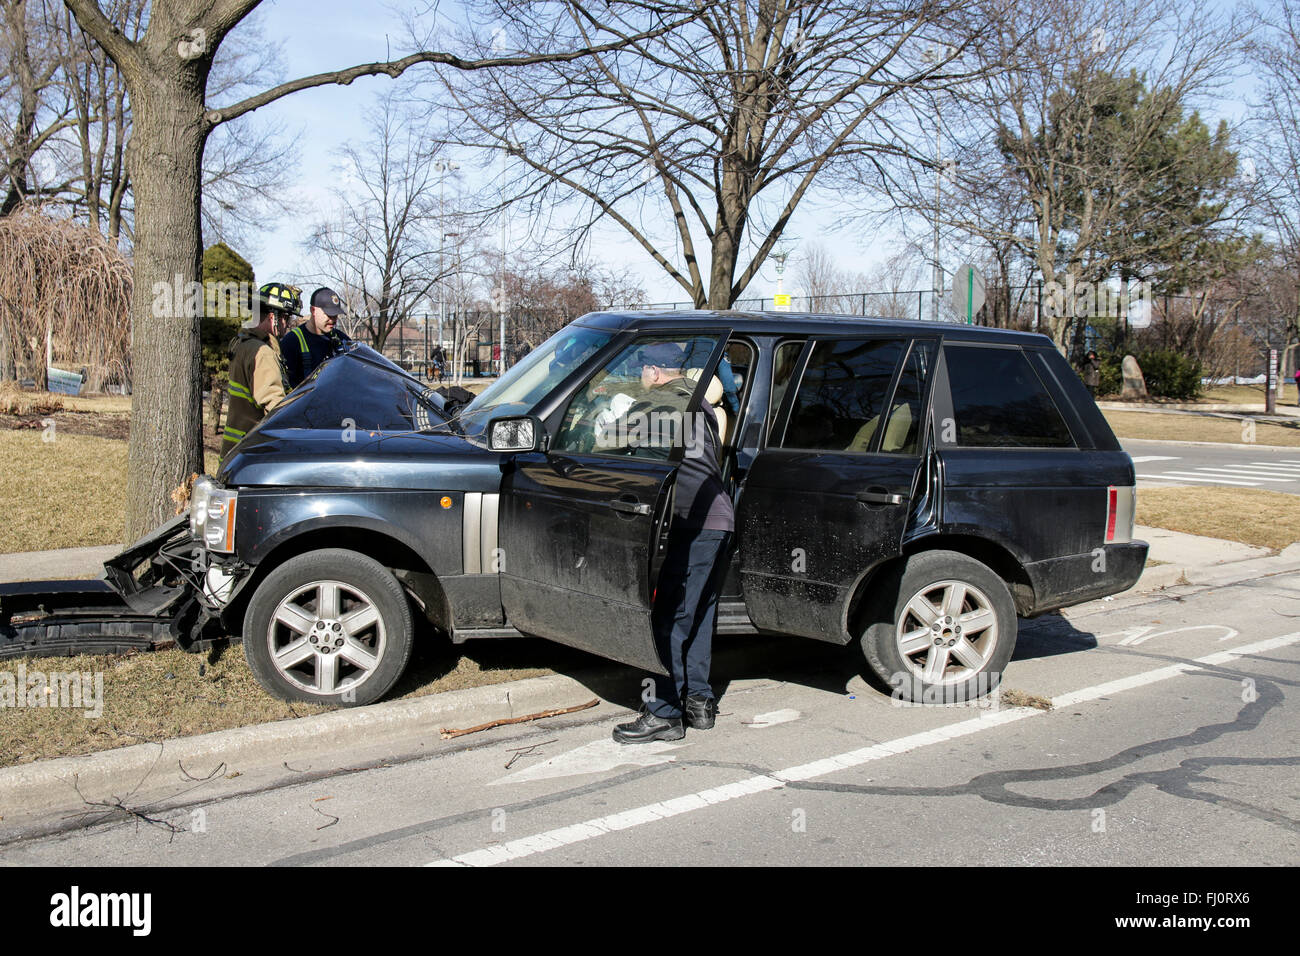 Oak Park, Illinois, USA. 27 février 2016. Une Range Rover se repose sur un arbre de la promenade froissé à l'intersection de la rue Division et Elmwood Ave dans cette banlieue ouest de Chicago. De toute évidence, les SUV ont quitté la route sans ralentir, conduisant à de graves dommages et l'extrémité avant des débris de la voiture roulant tout à fait un peu plus loin le long de la Division. Heureusement, il n'y a pas eu de blessures graves pour le conducteur et les passagers, dont un bébé dans un siège de voiture. Les zones fusibles et airbags dans cette automobile moderne dans toute la probabilité de sauver des vies. Credit : Todd Bannor/Alamy Live News Banque D'Images